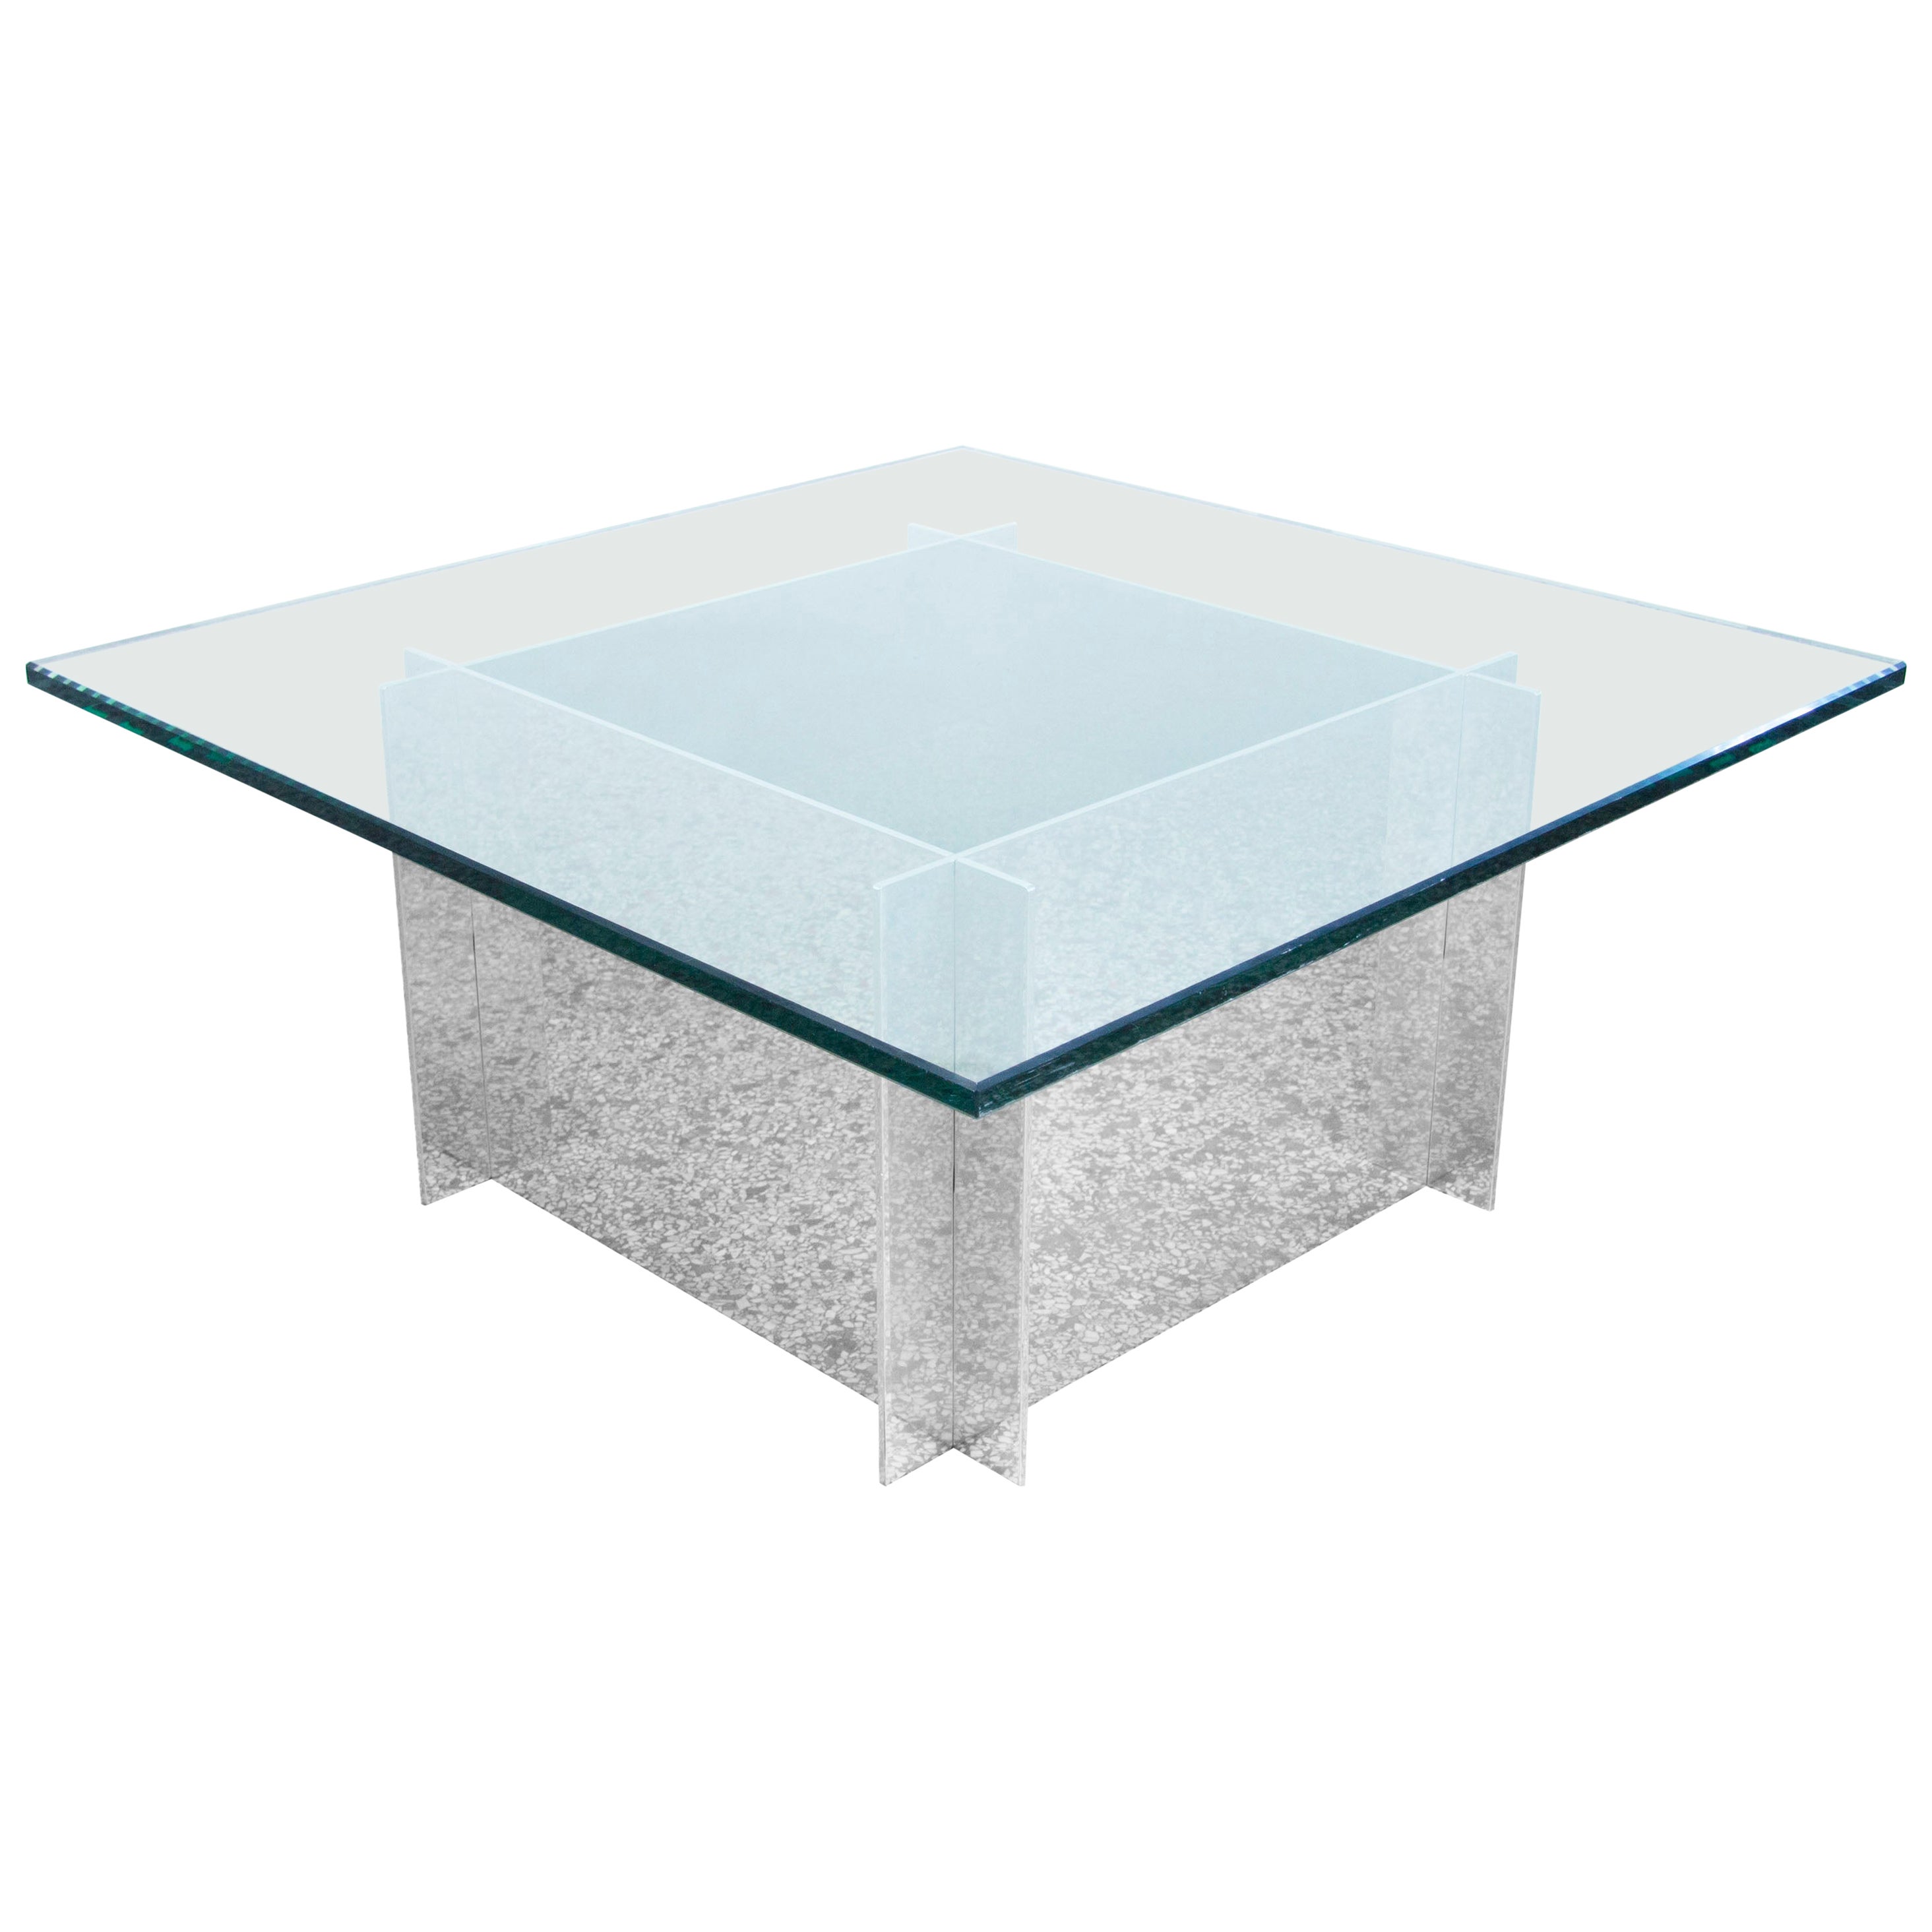 Table basse en aluminium et verre Paul Mayen pour Habitat